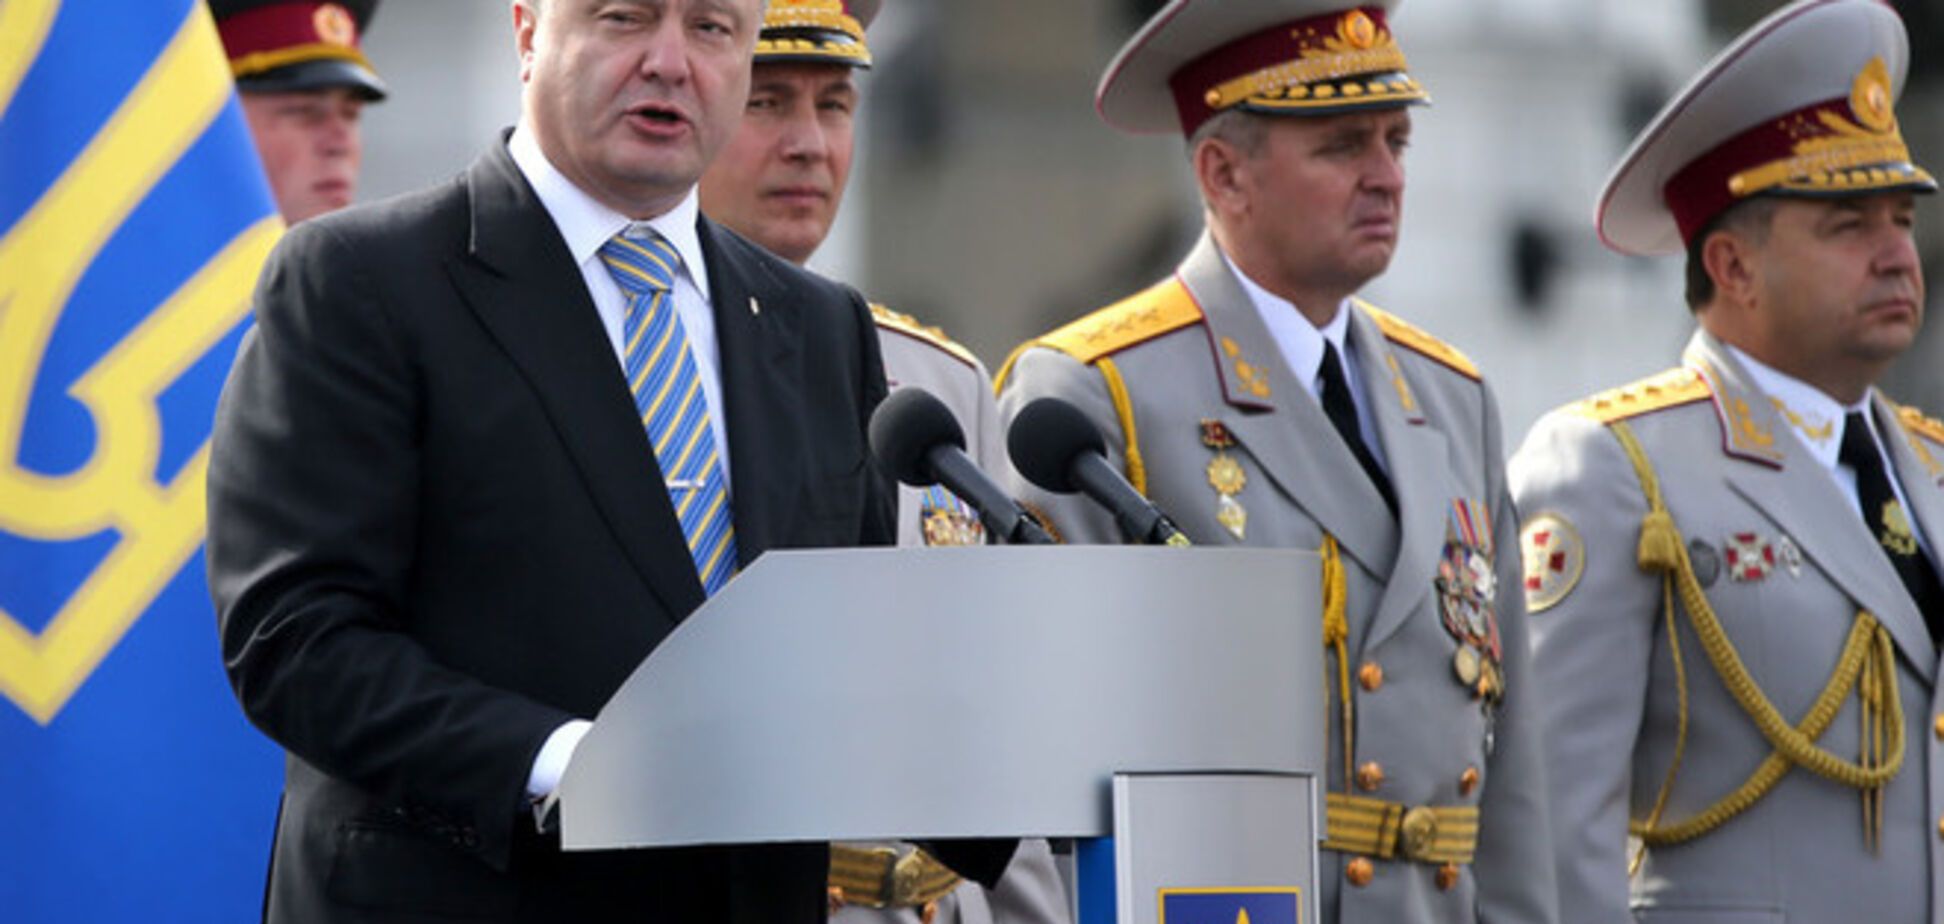 Гриценко требует отменить поездку Порошенко в Минск